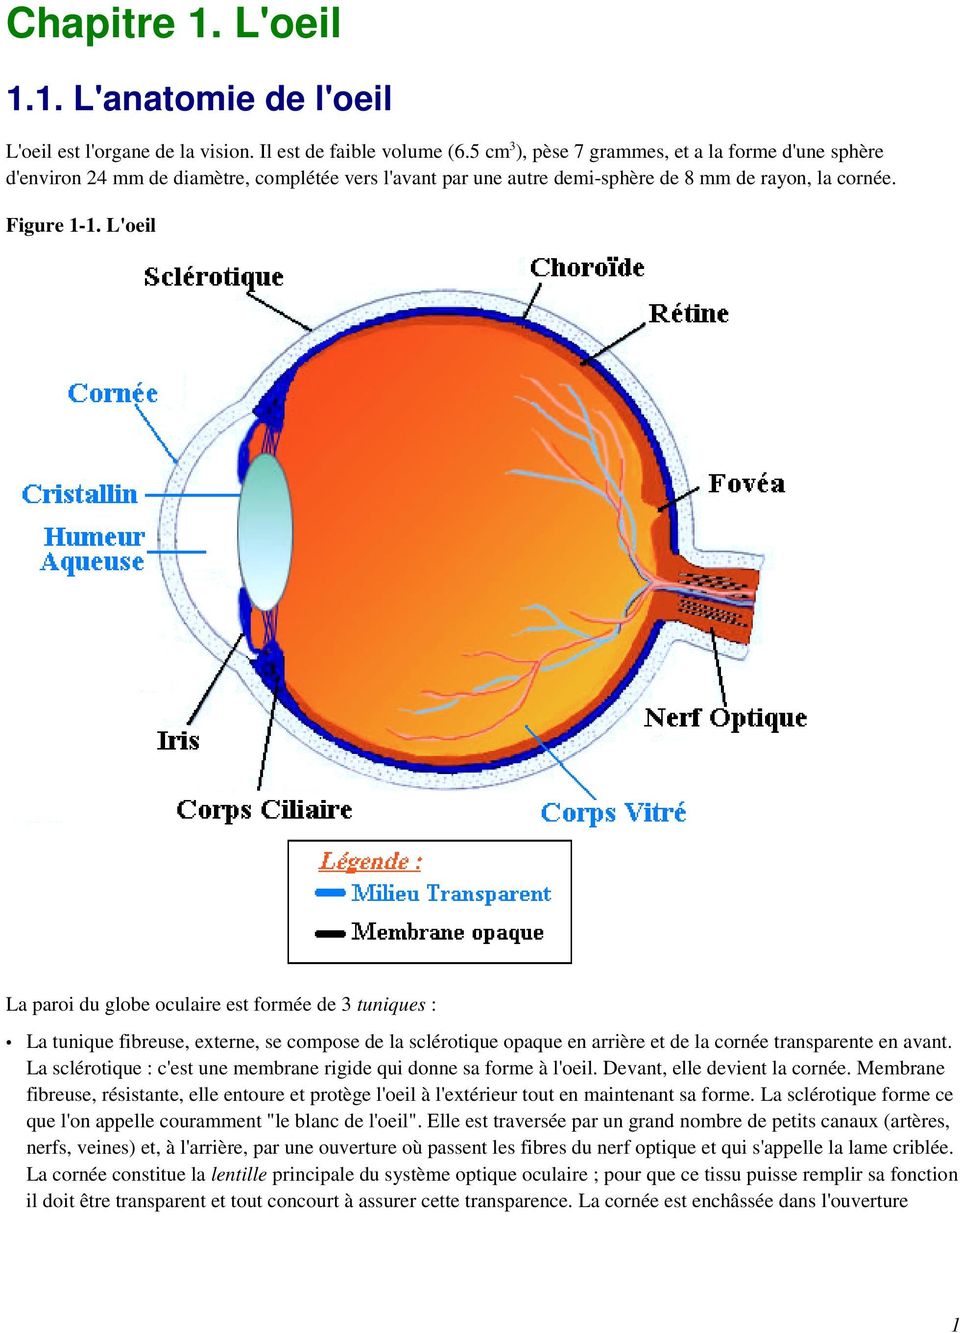 L'oeil La paroi du globe oculaire est formée de 3 tuniques : La tunique fibreuse, externe, se compose de la sclérotique opaque en arrière et de la cornée transparente en avant.